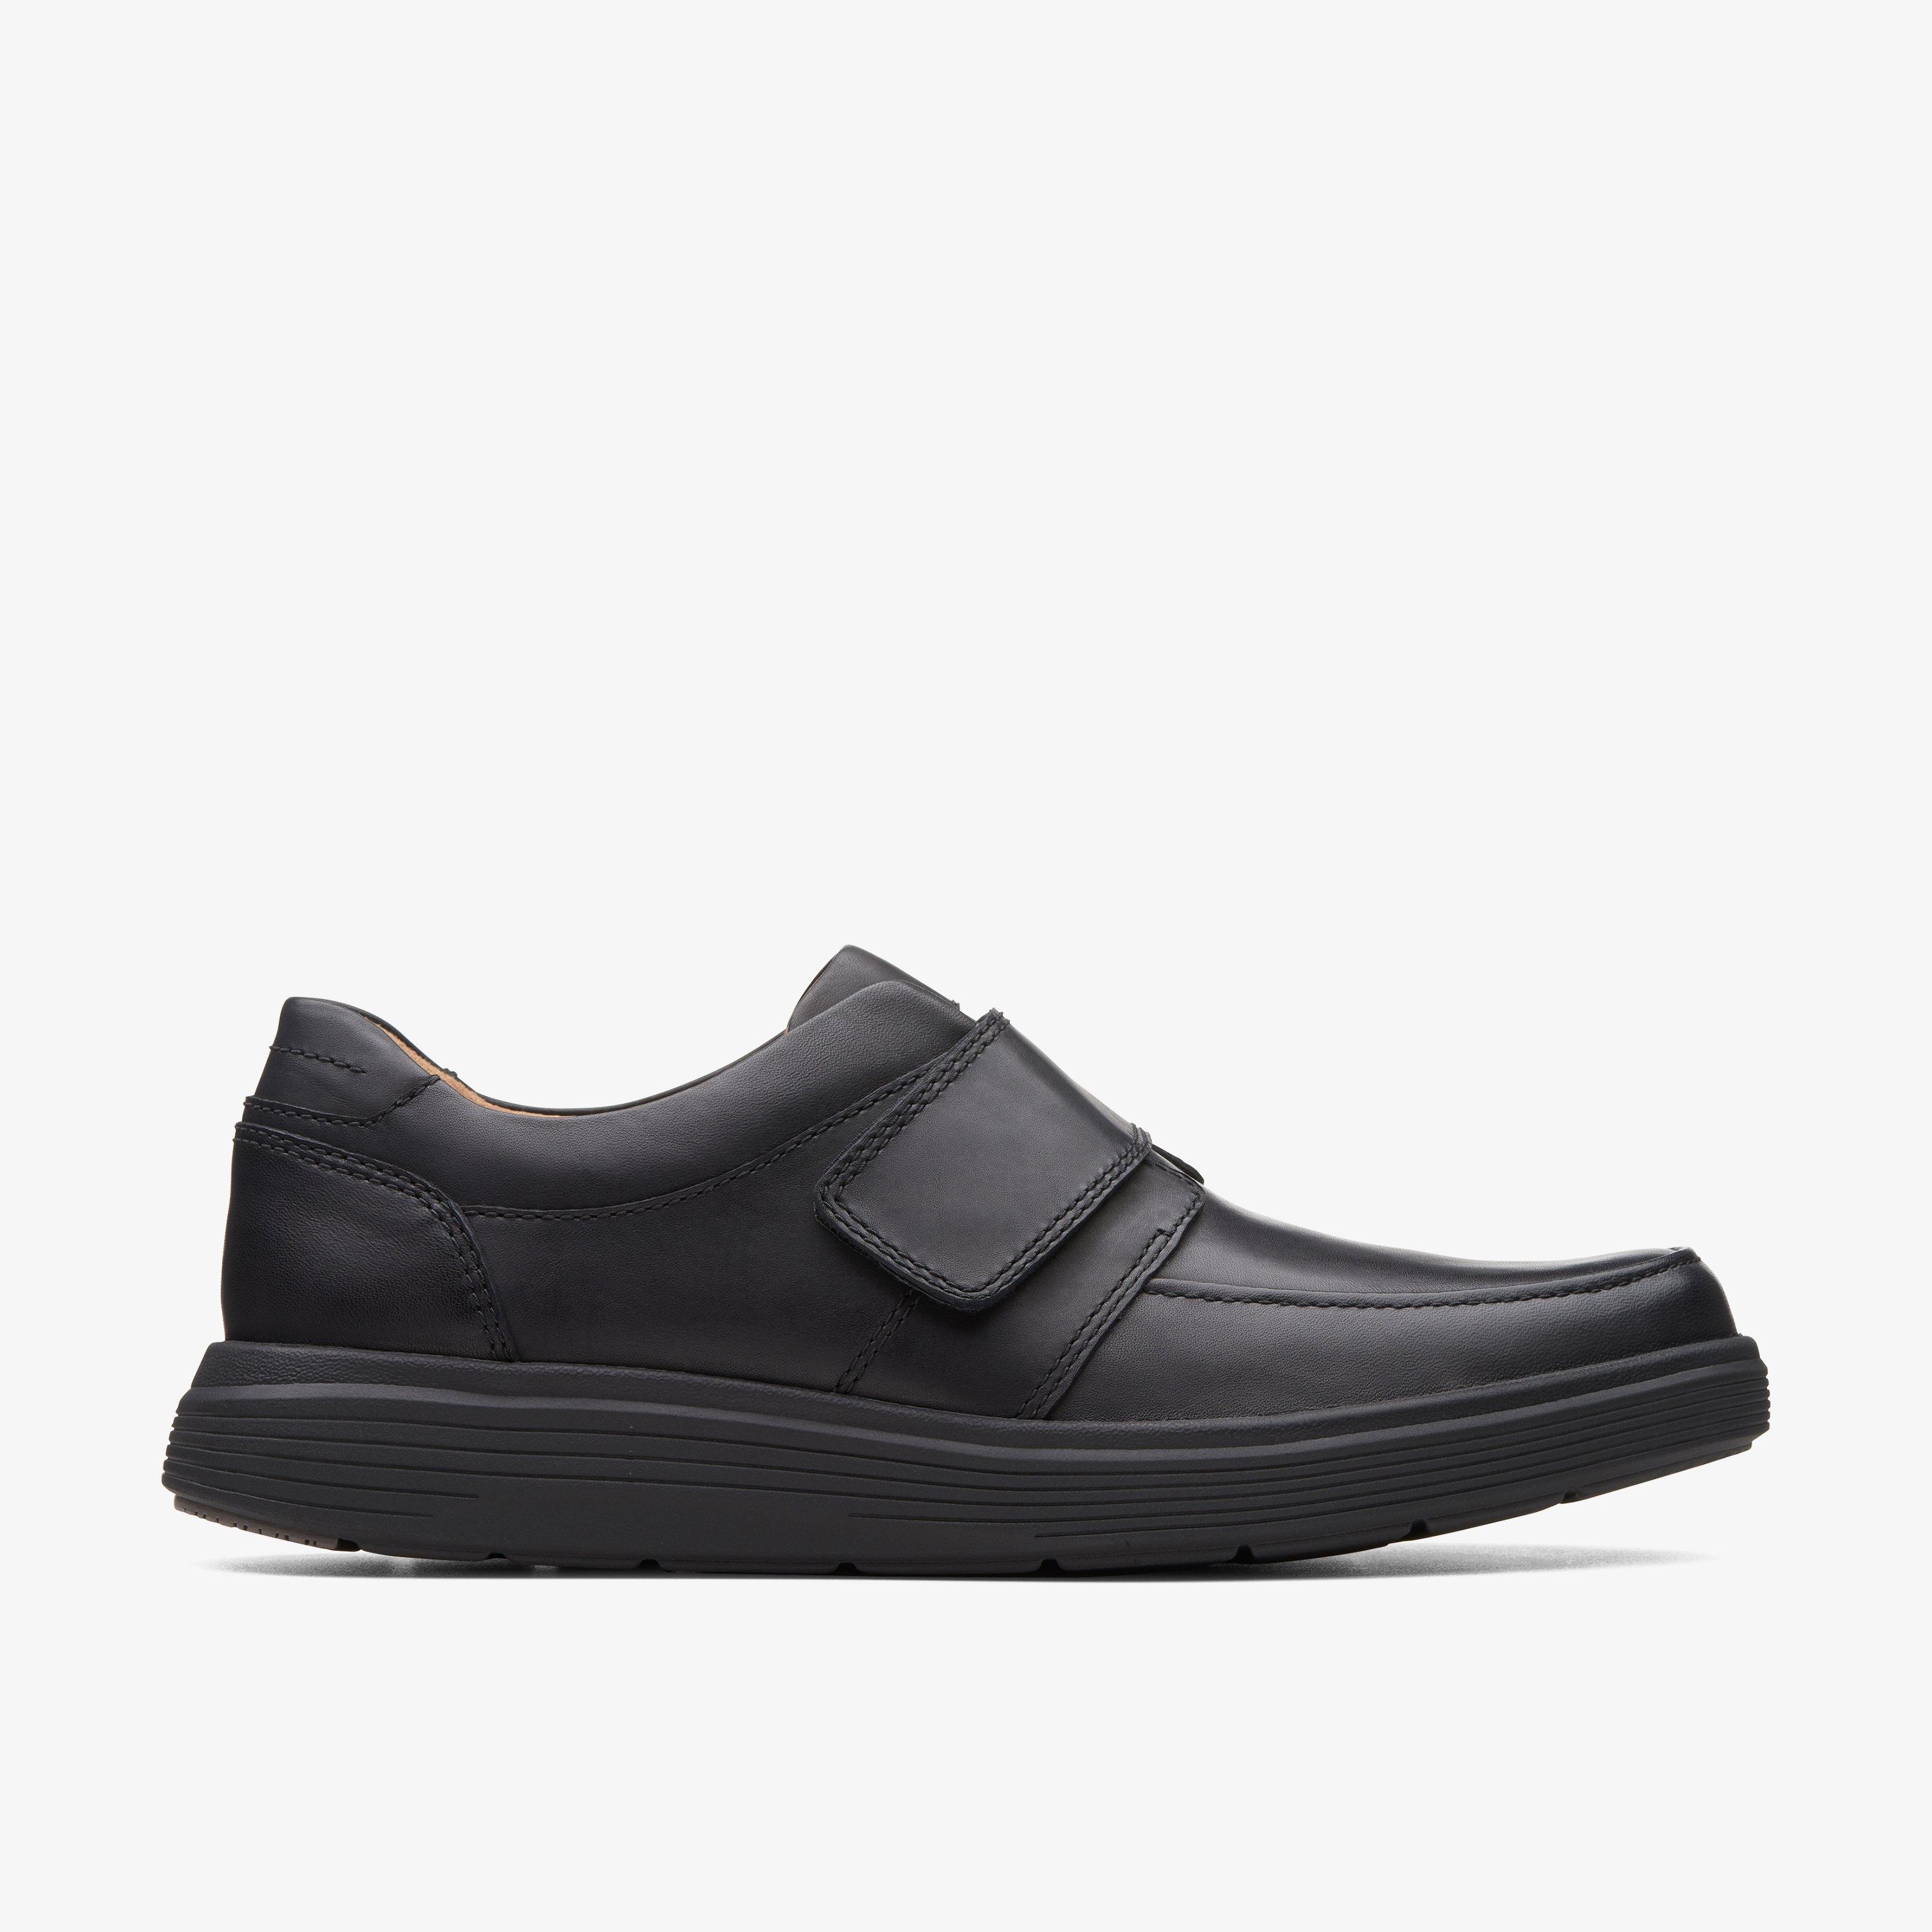 Size 12 Clarks Un Abode Strap Black Leather shoes